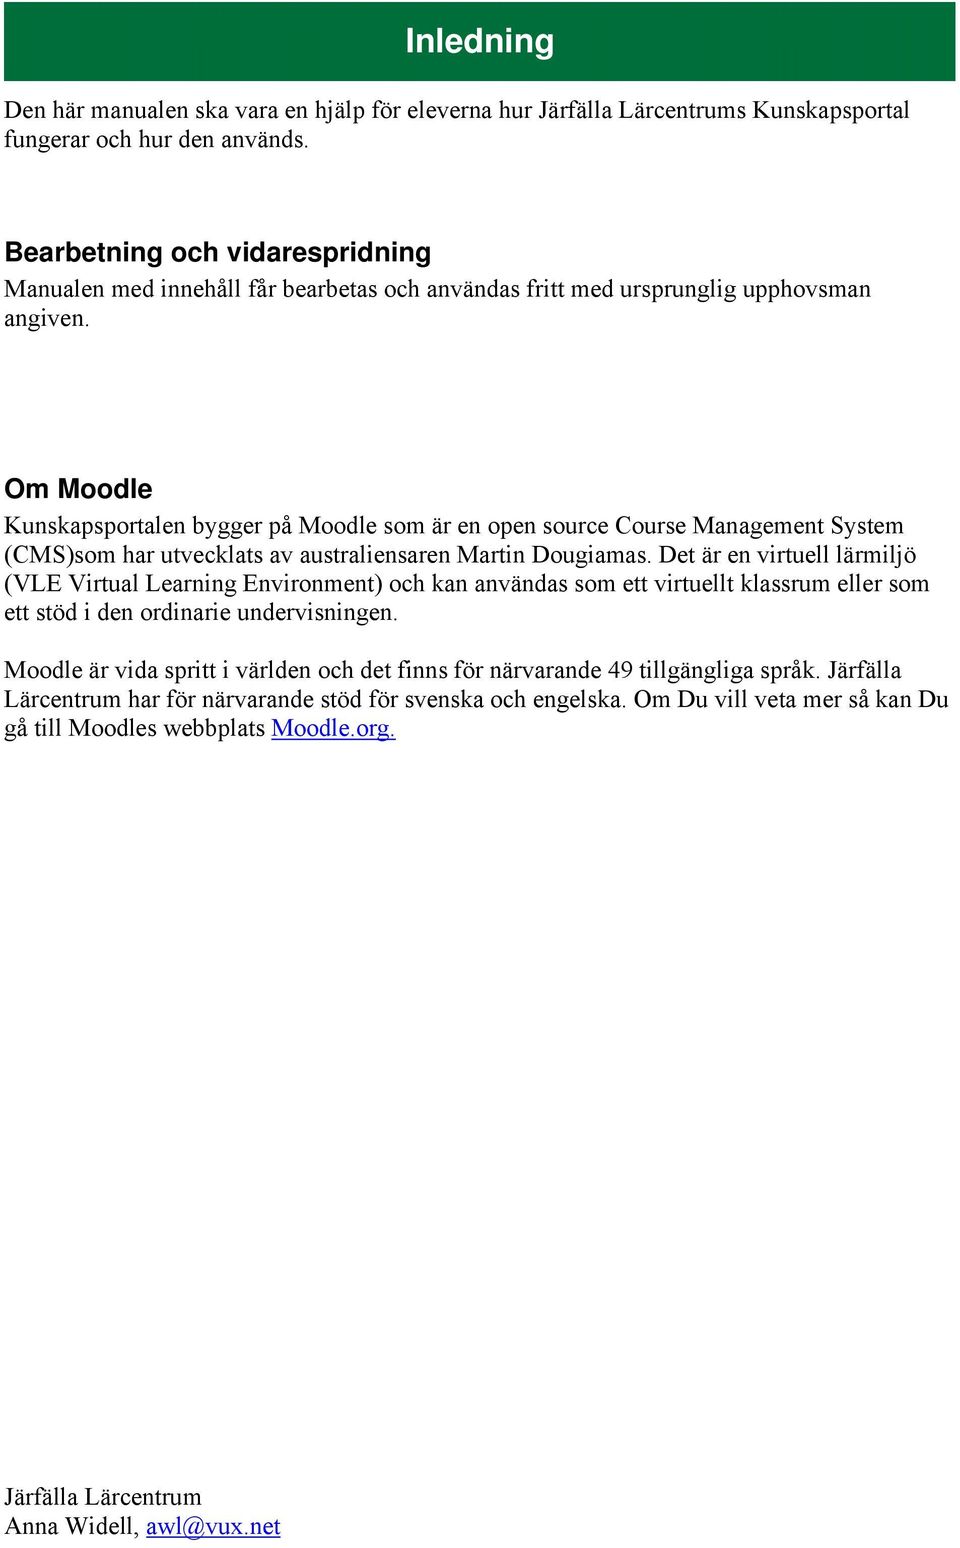 Om Moodle Kunskapsportalen bygger på Moodle som är en open source Course Management System (CMS)som har utvecklats av australiensaren Martin Dougiamas.